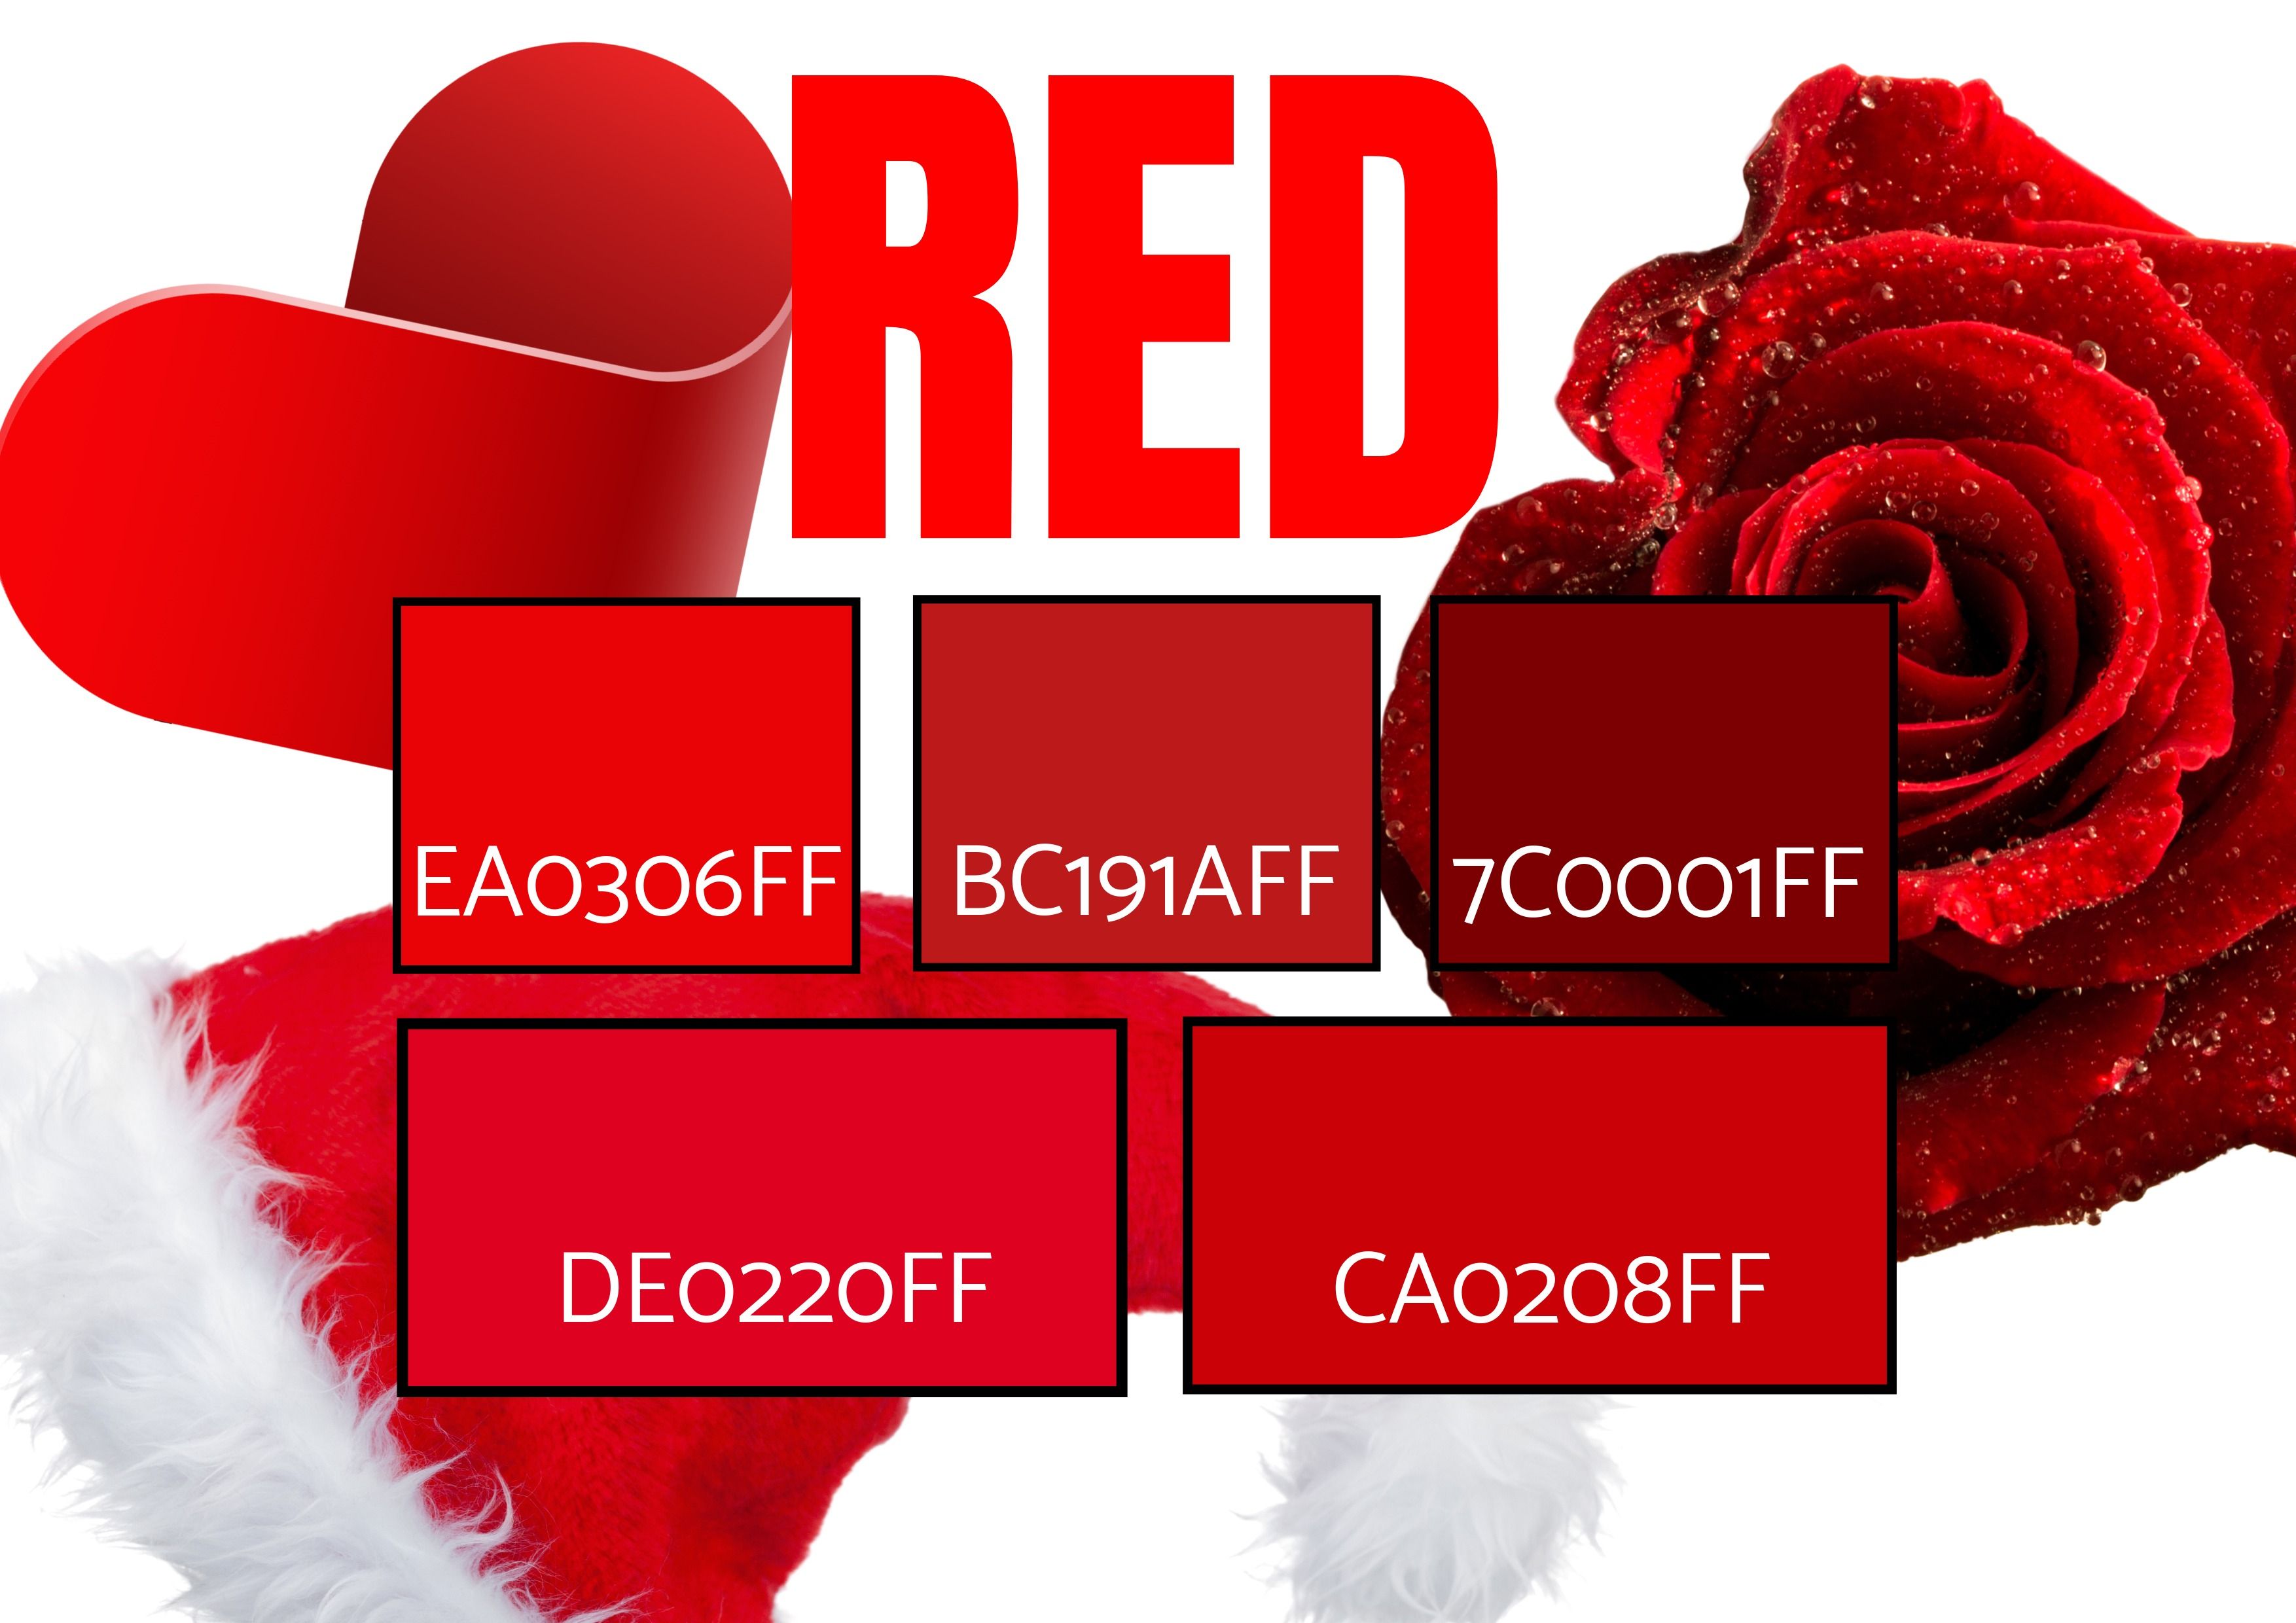 Auswahl von 5 Rottönen mit Bildern eines Herzsymbols, einer Rose und einer Weihnachtsmütze – Symbolik